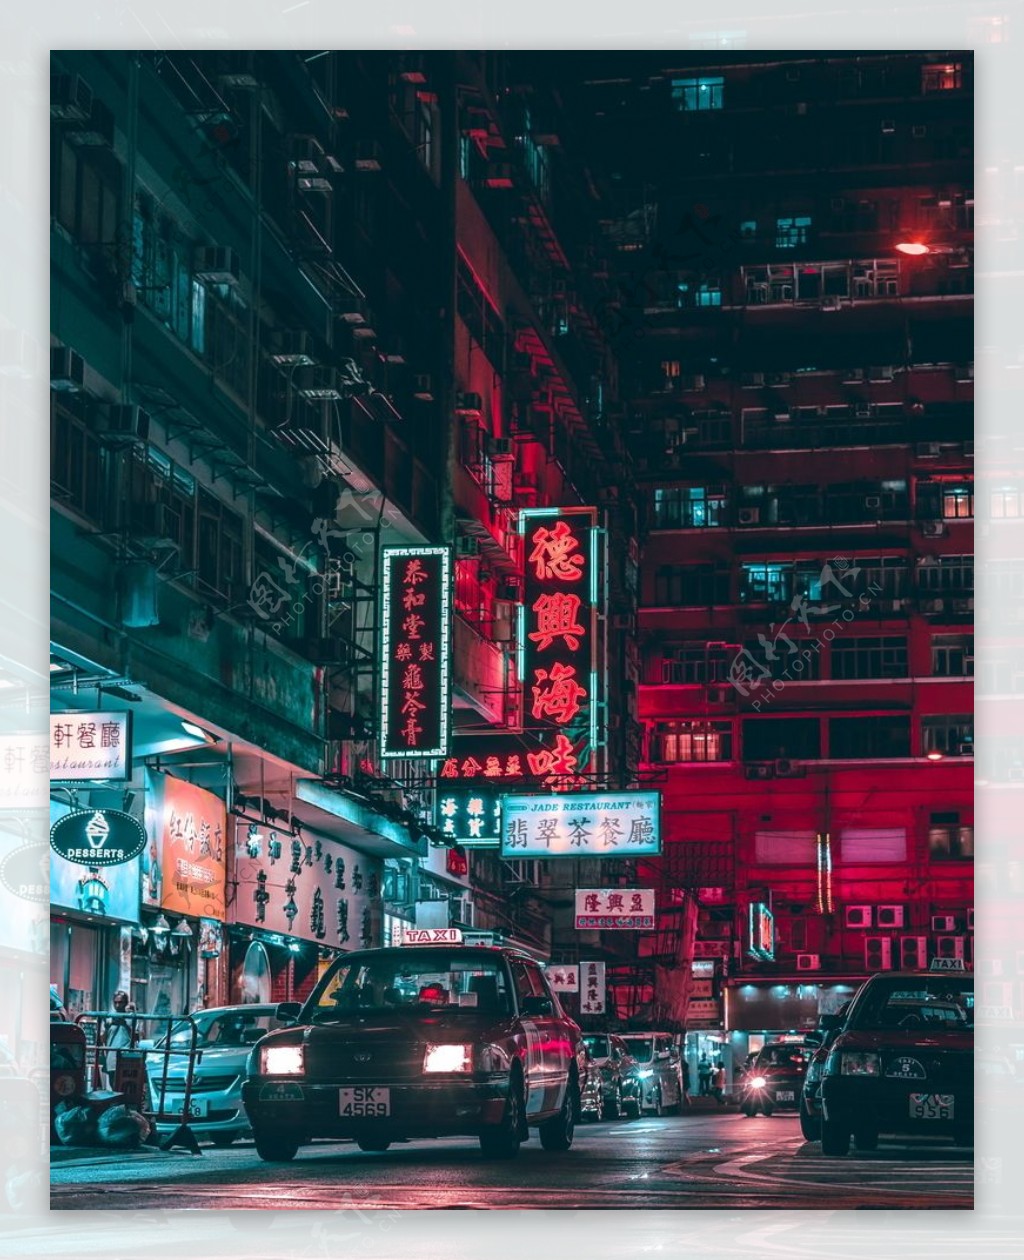 香港建筑风景